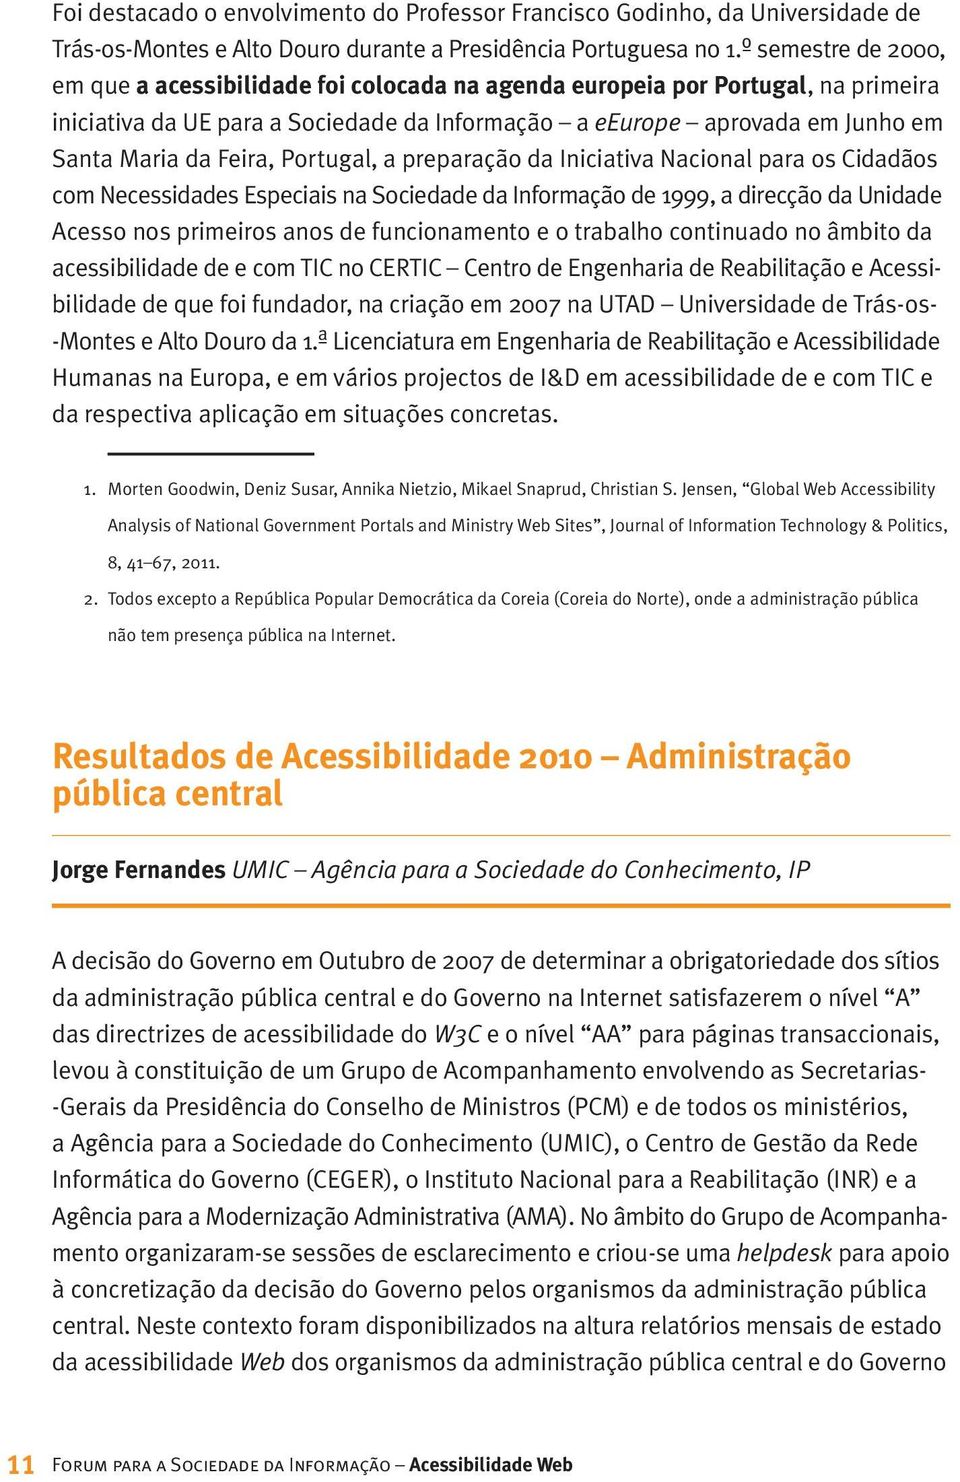 Feira, Portugal, a preparação da Iniciativa Nacional para os Cidadãos com Necessidades Especiais na Sociedade da Informação de 1999, a direcção da Unidade Acesso nos primeiros anos de funcionamento e